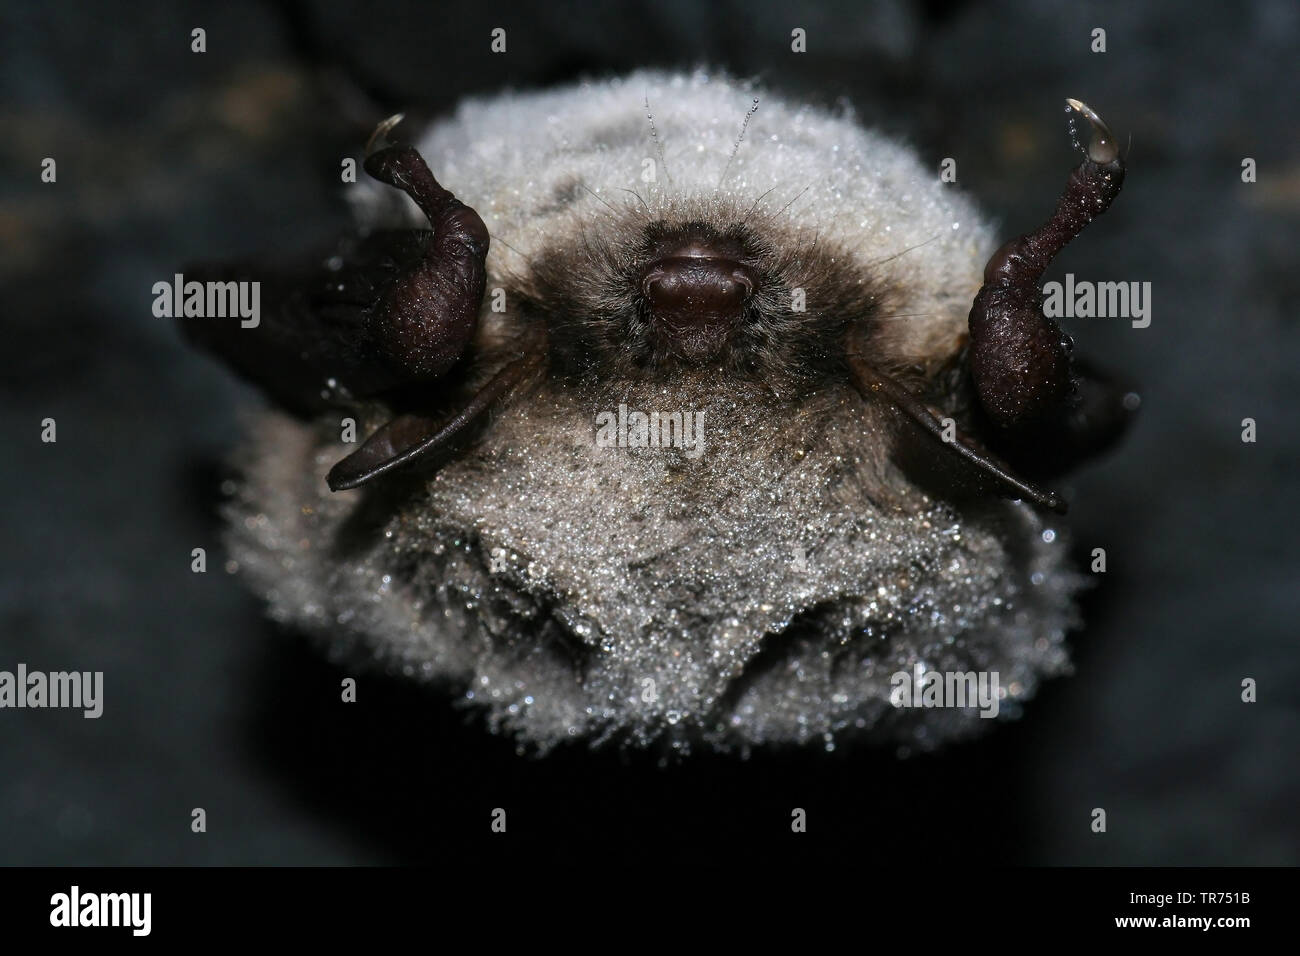 pond bat (Myotis dasycneme), sleeping, Germany Stock Photo